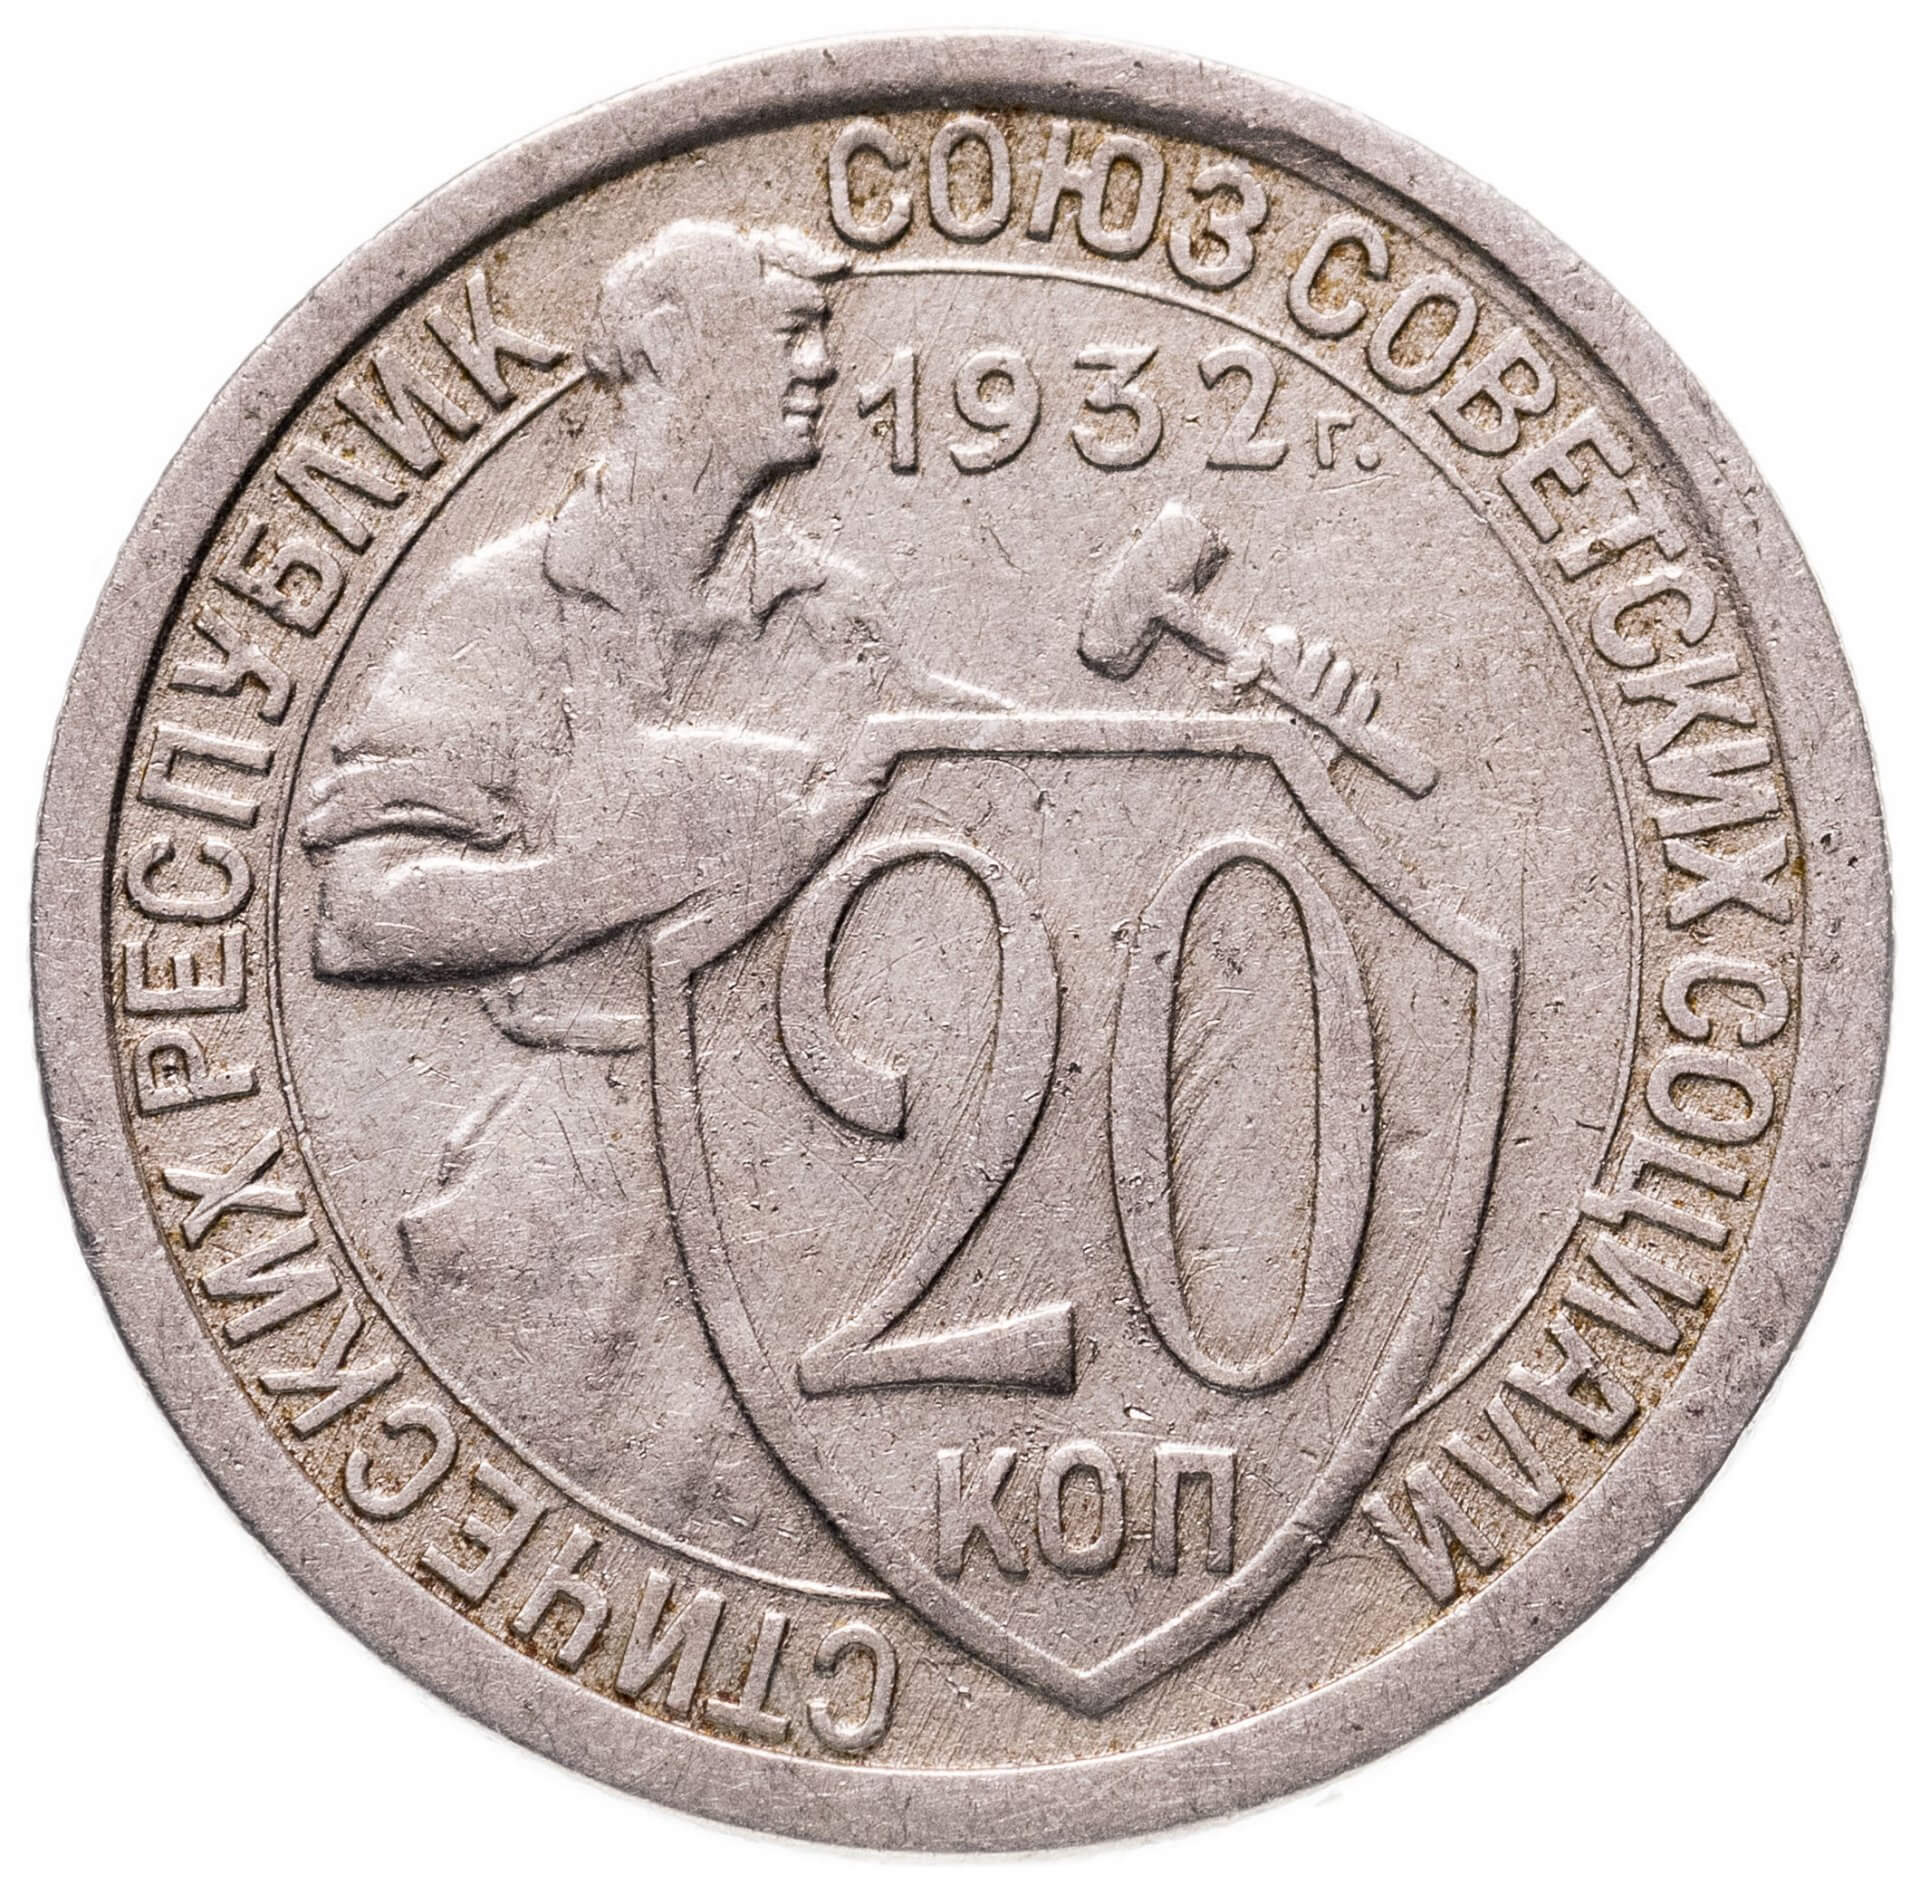 1932 год. 10 Копеек 1932 года. G. 15 Копеек 1932 года в слабе. Недостатки монет. 20 Копеек 1932 года g №3.